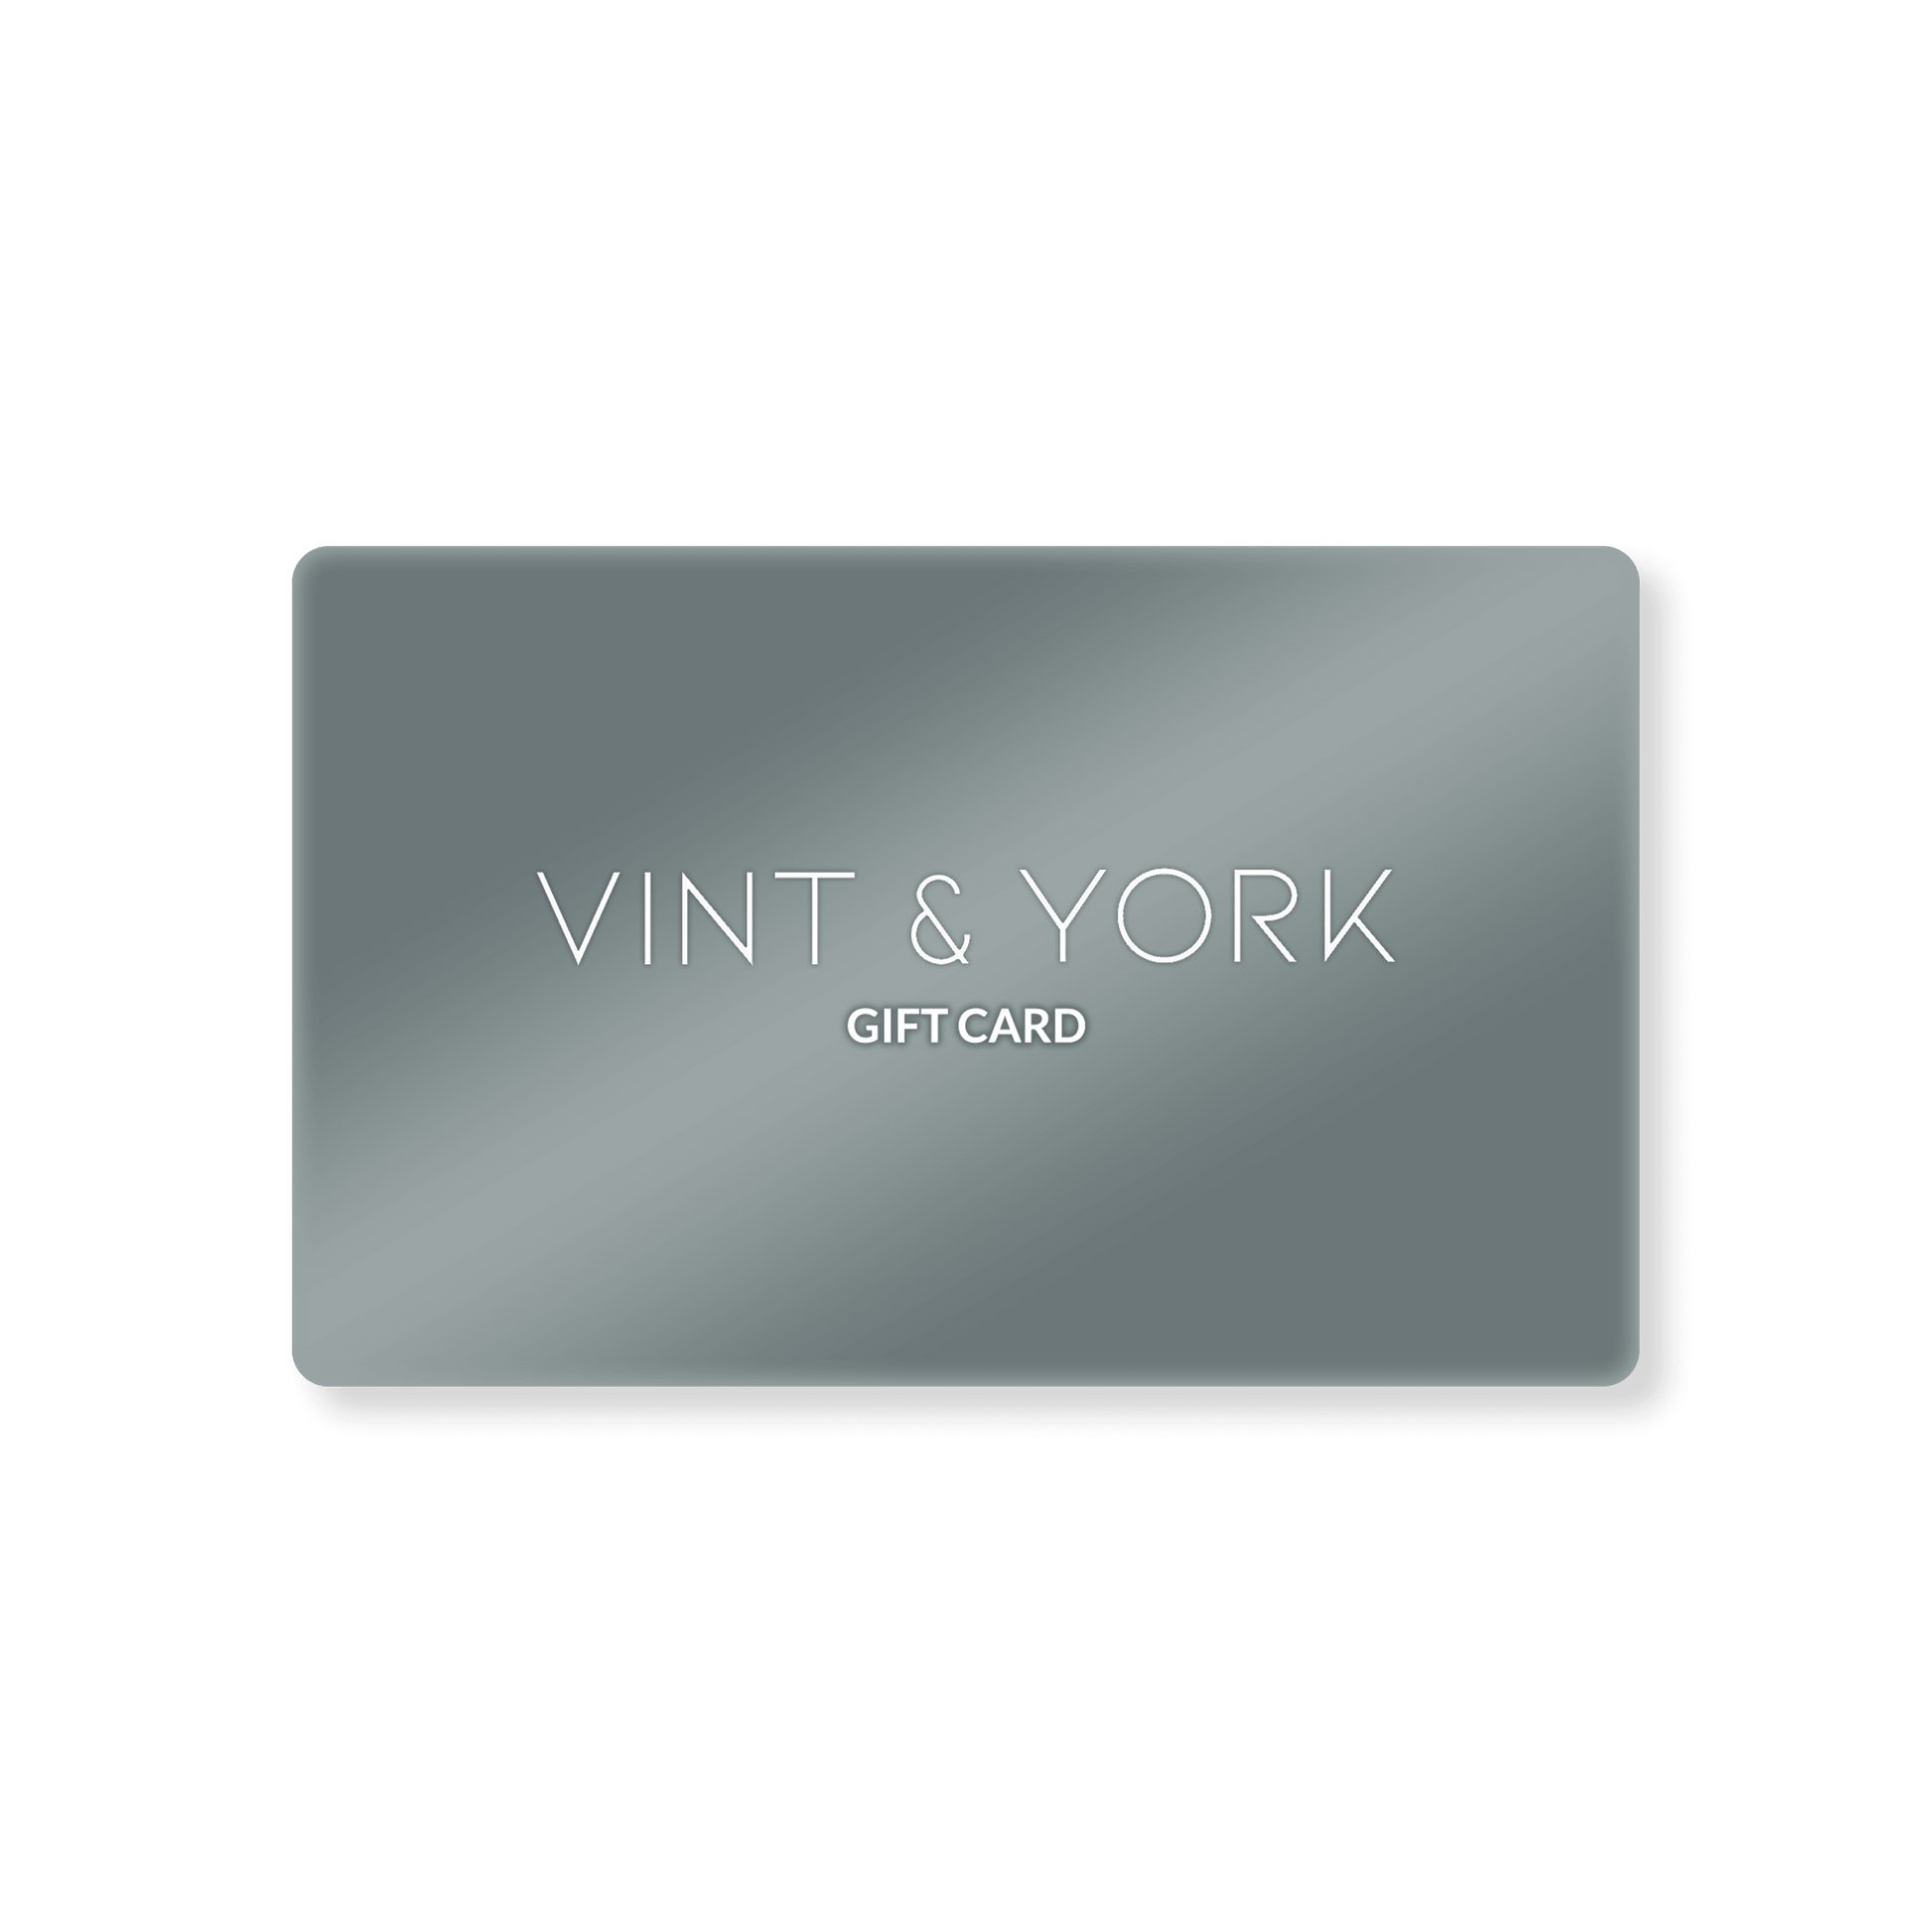 Vint & York Gift Card from Vint & York